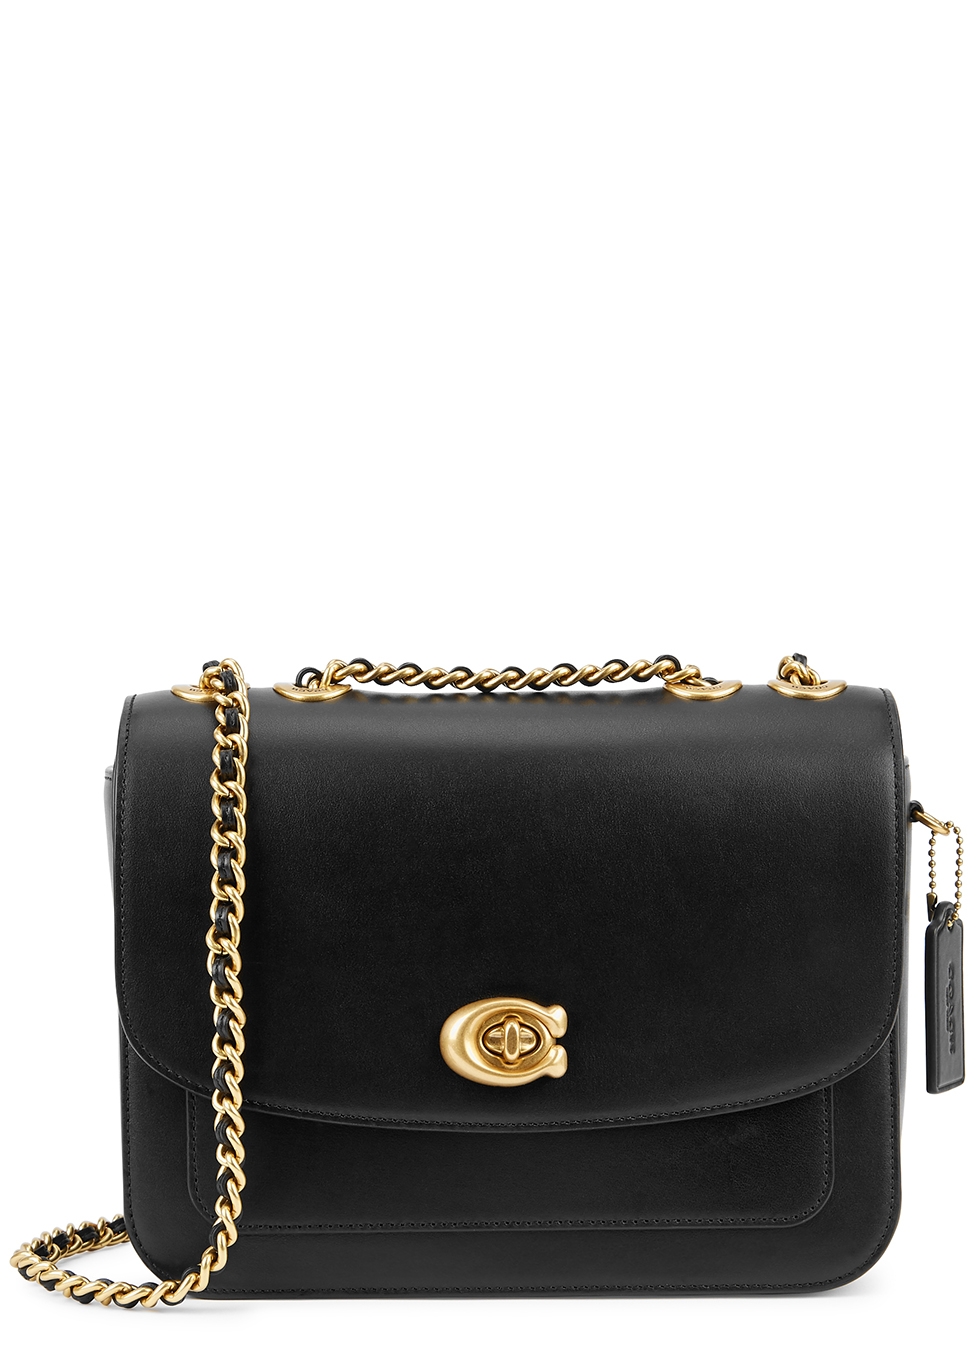 Madison black leather shoulder bag